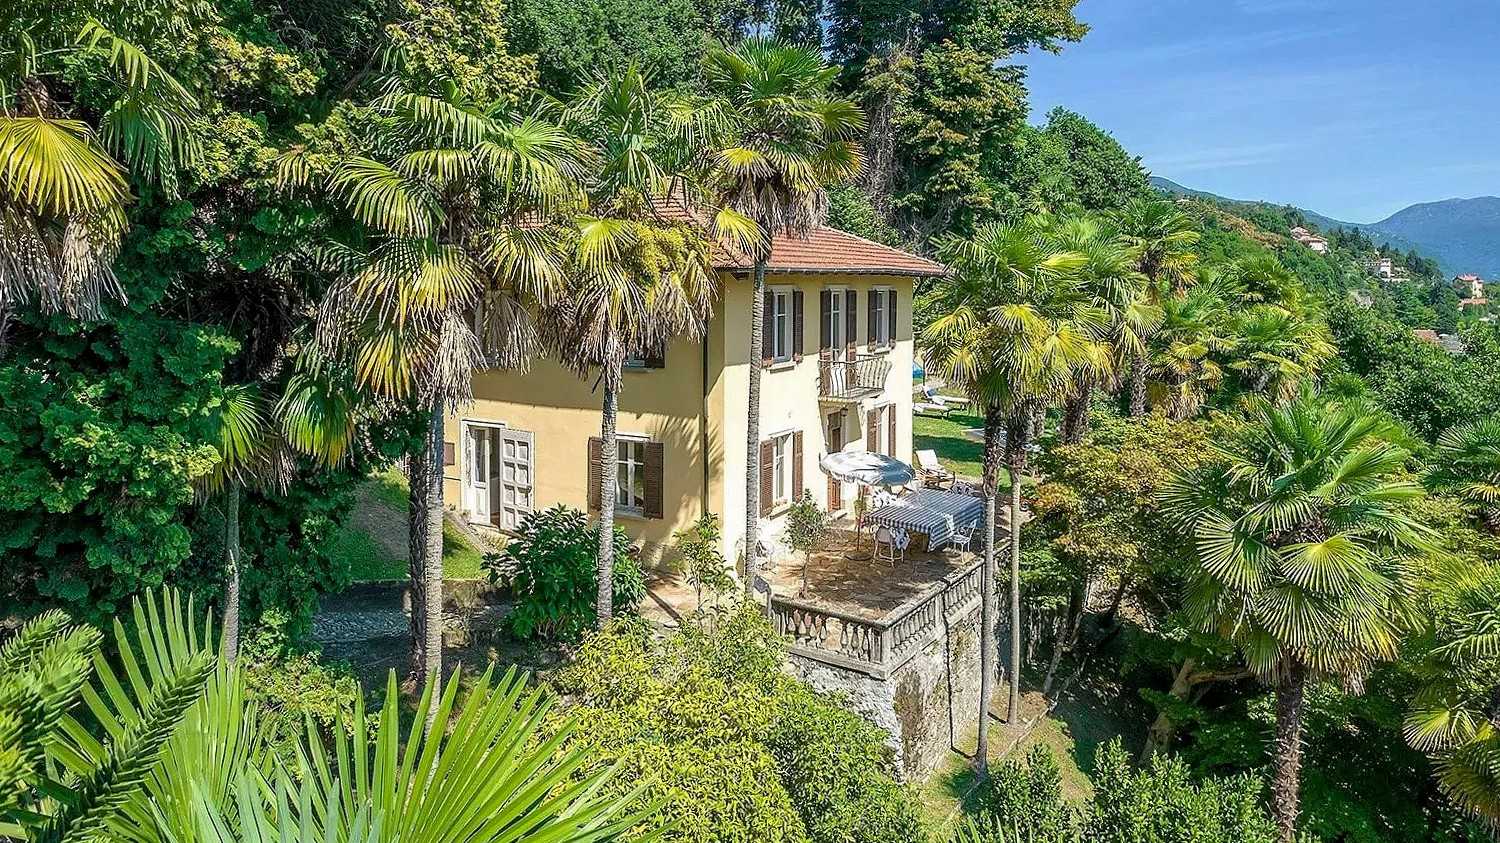 Fotos Villa mit Park und Privatstrand am Lago Maggiore